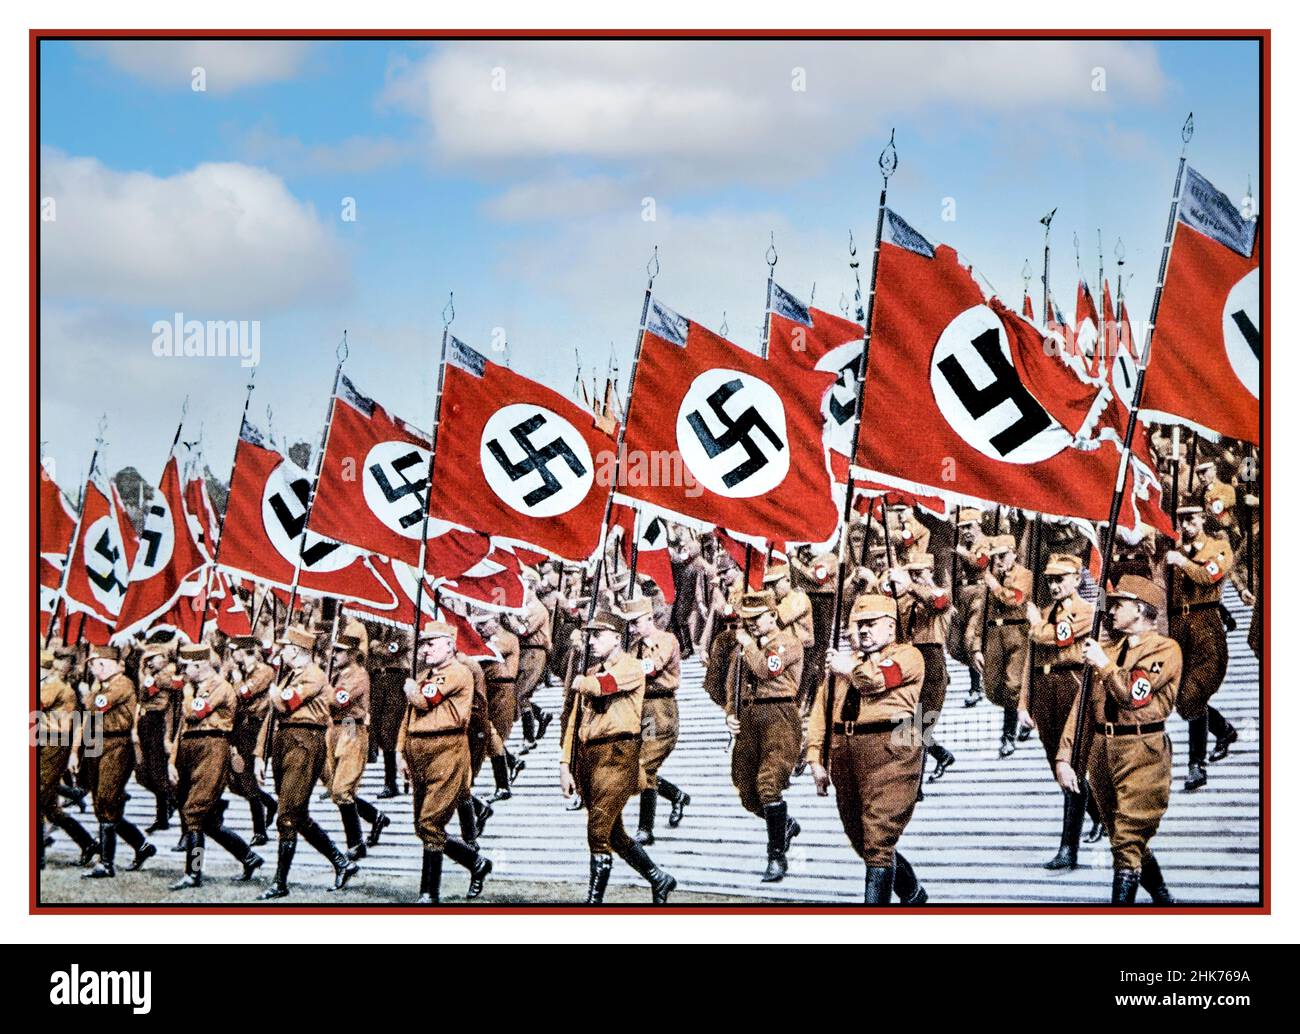 Sturmabteilung sa troupes propagande d'époque Nazis German Sturmabteilung sa troupes marchant avec les drapeaux nazis Swastika au rassemblement nazi de Nuremberg Allemagne 1933.Utilisé comme titre pour le film de propagande Triumph of the Wvolonté (Triumph des Willens) un film de 1935 réalisé par Leni Riefenstahl. Banque D'Images